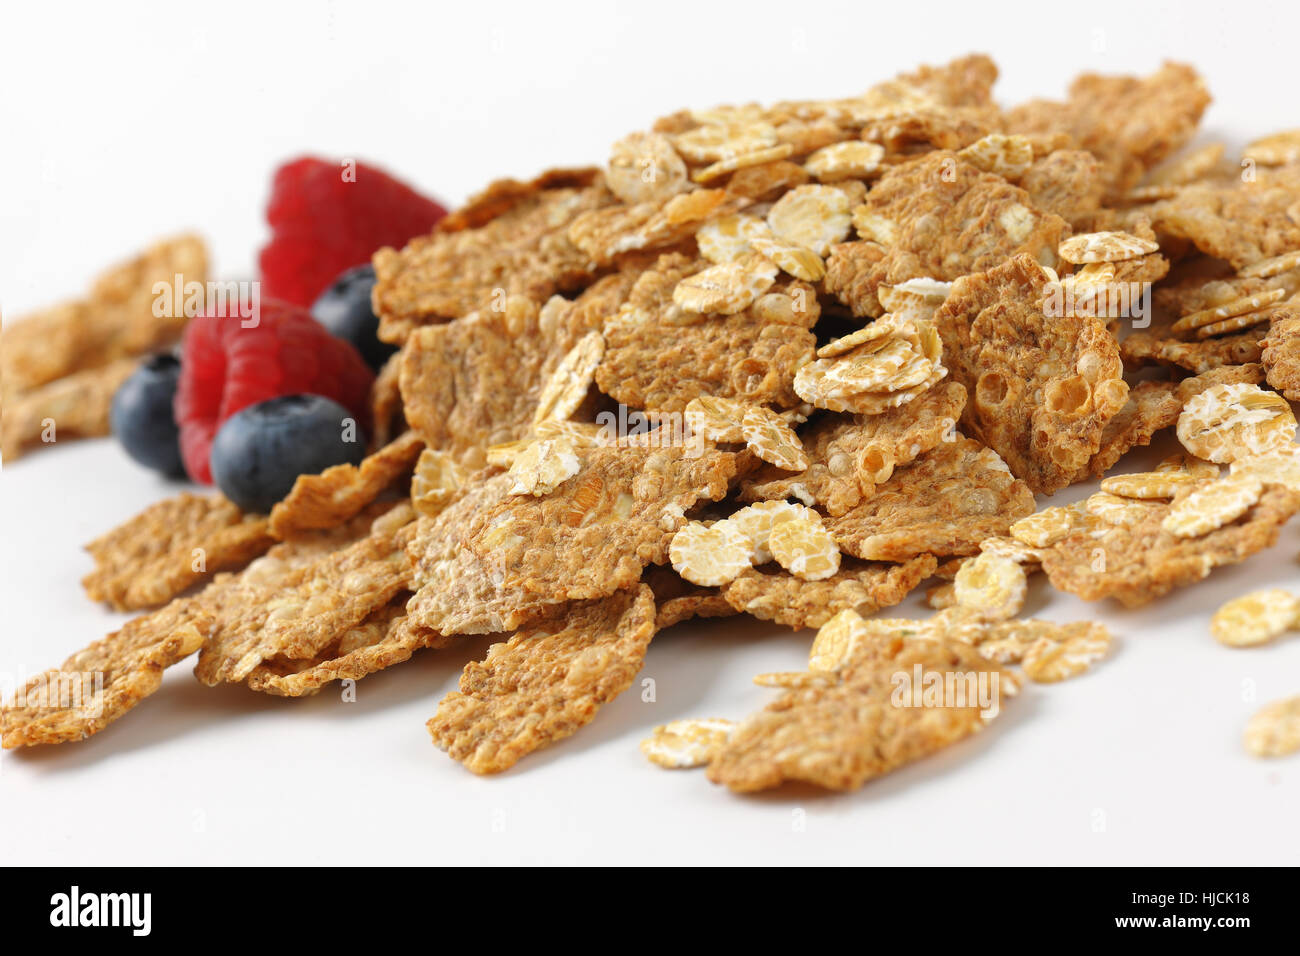 Haufen von Frühstücks-Cerealien und Berry Obst auf weißem Hintergrund - Nahaufnahme Stockfoto